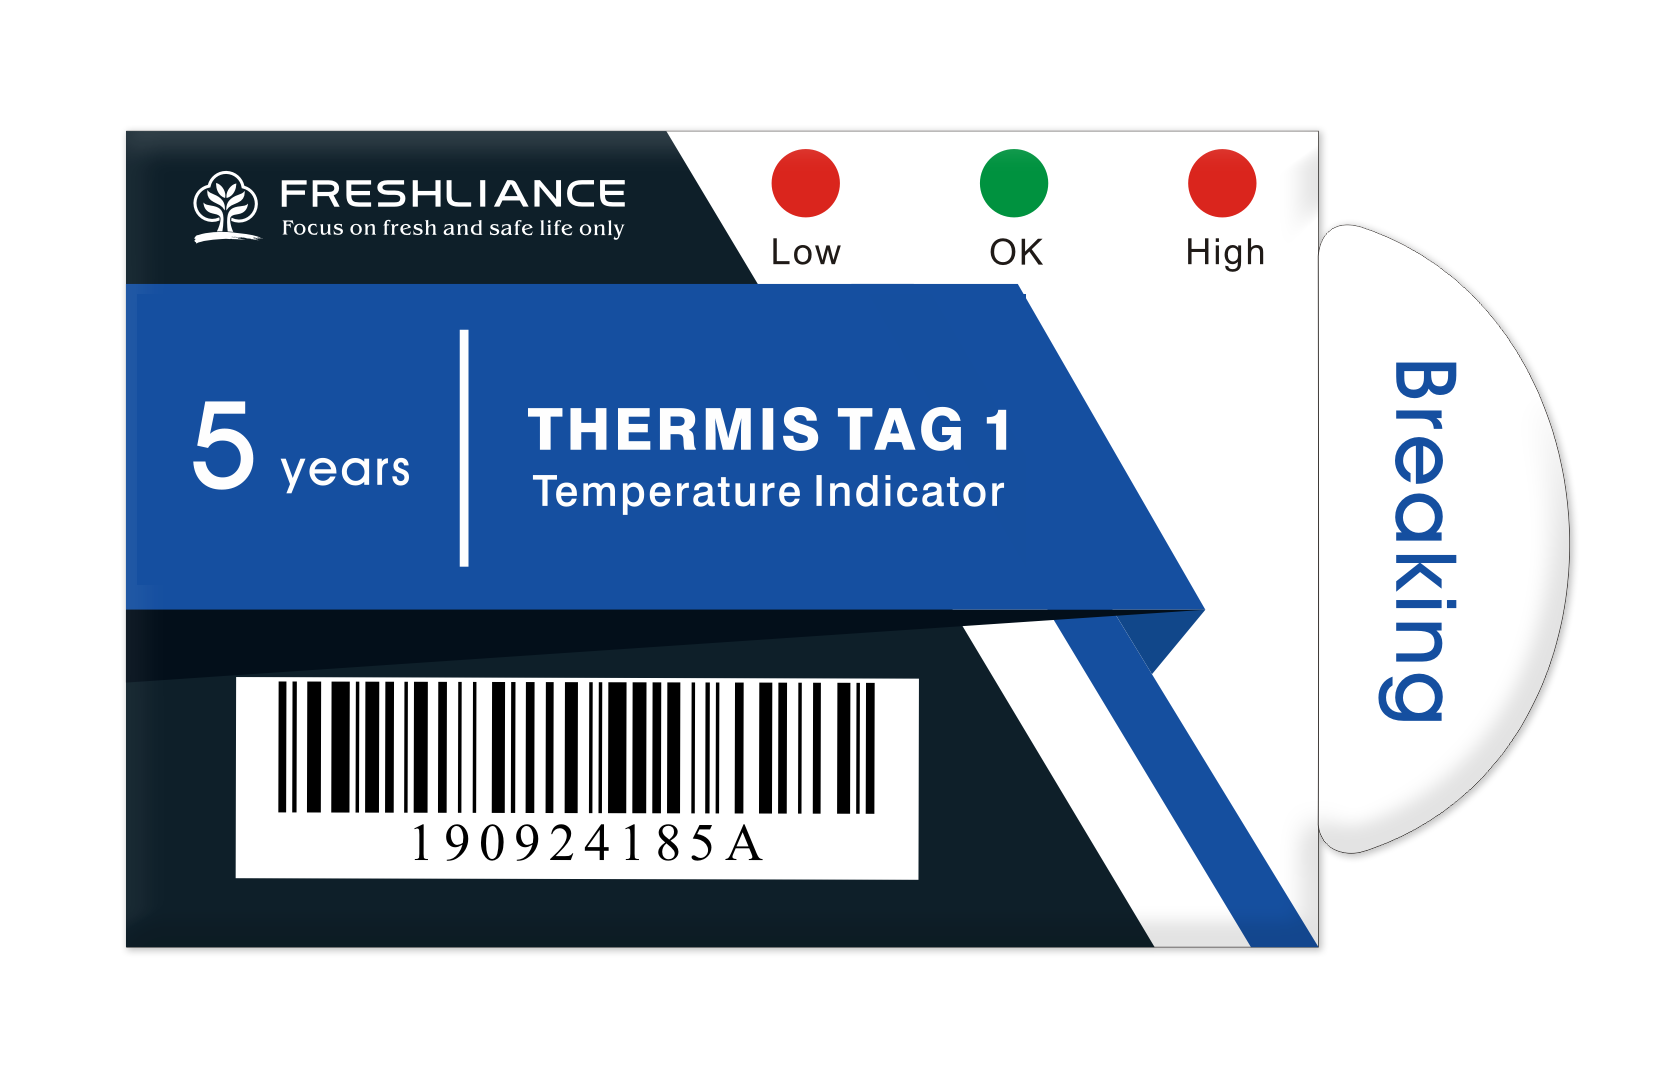 Thermis Tag 1 Temperature Indicator